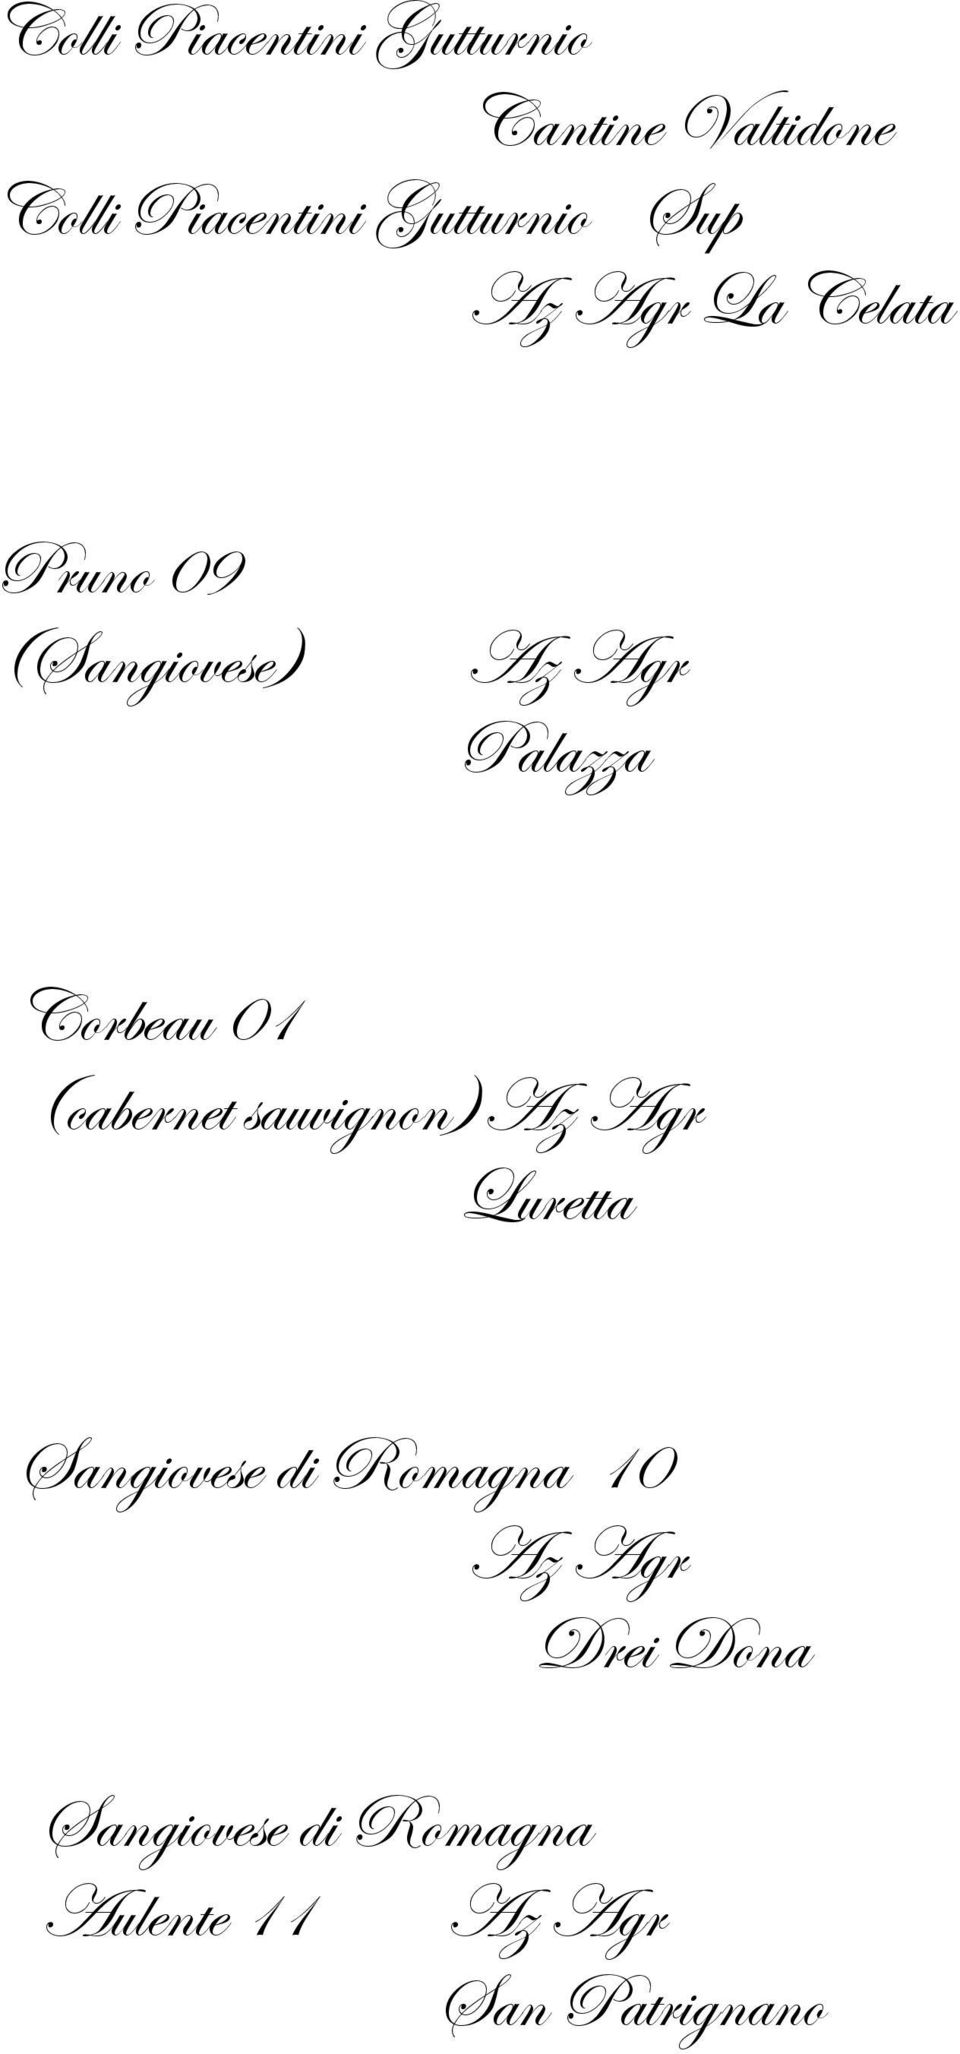 Palazza Corbeau 01 (cabernet sauvignon) Luretta Sangiovese